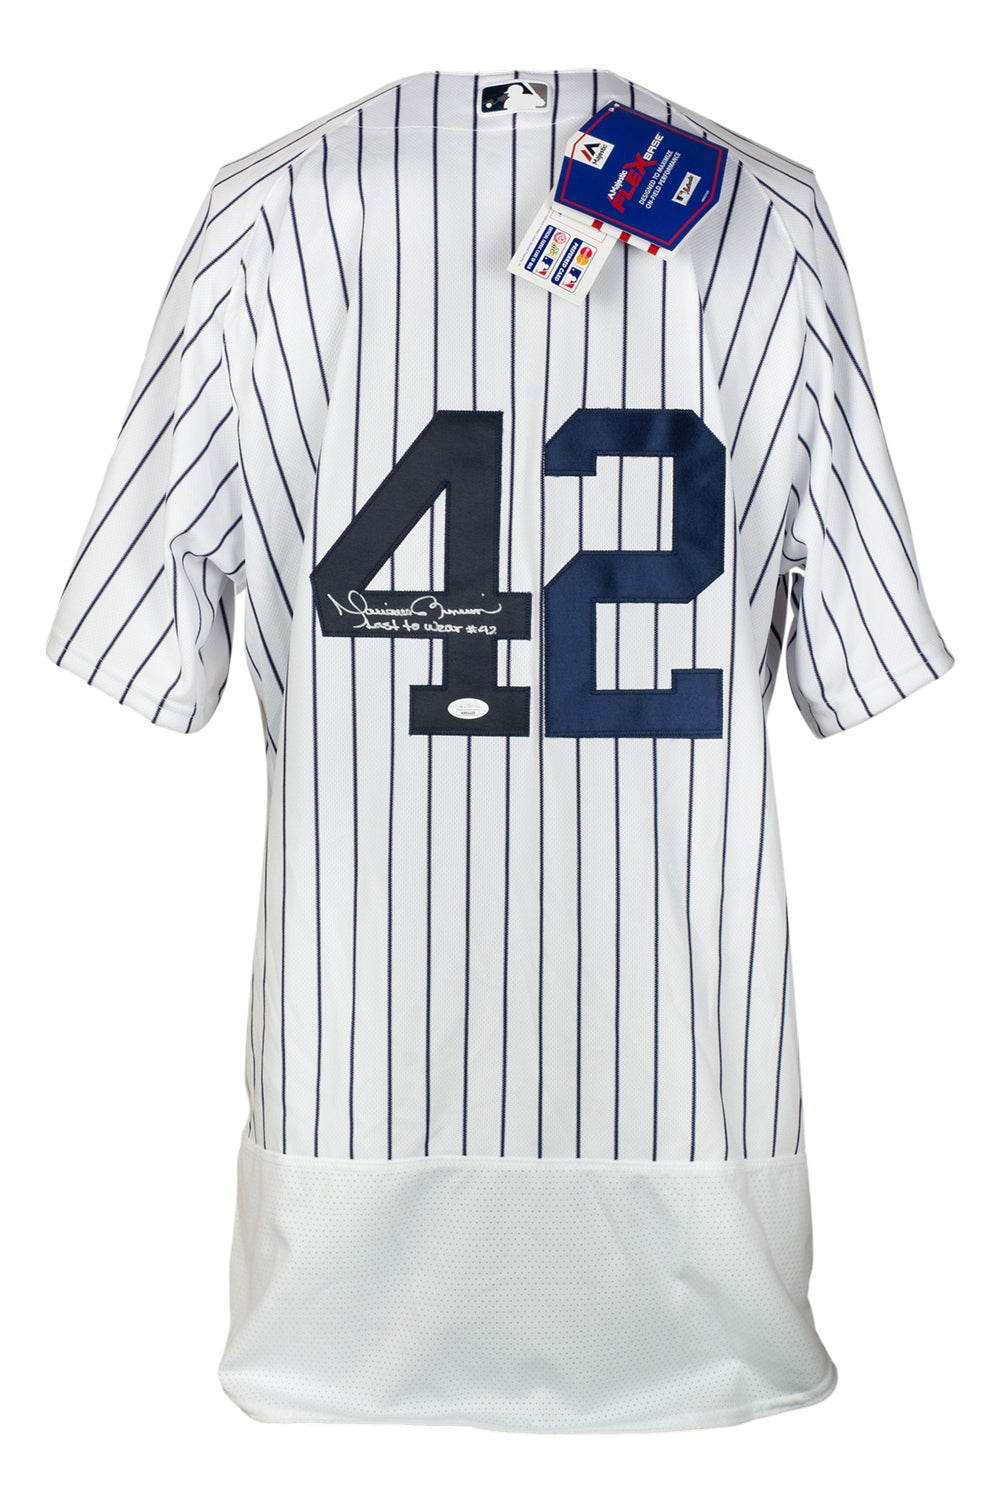 Mariano Rivera Last To Wear #42 Signed Baseball PSA/DNA LOA Graded